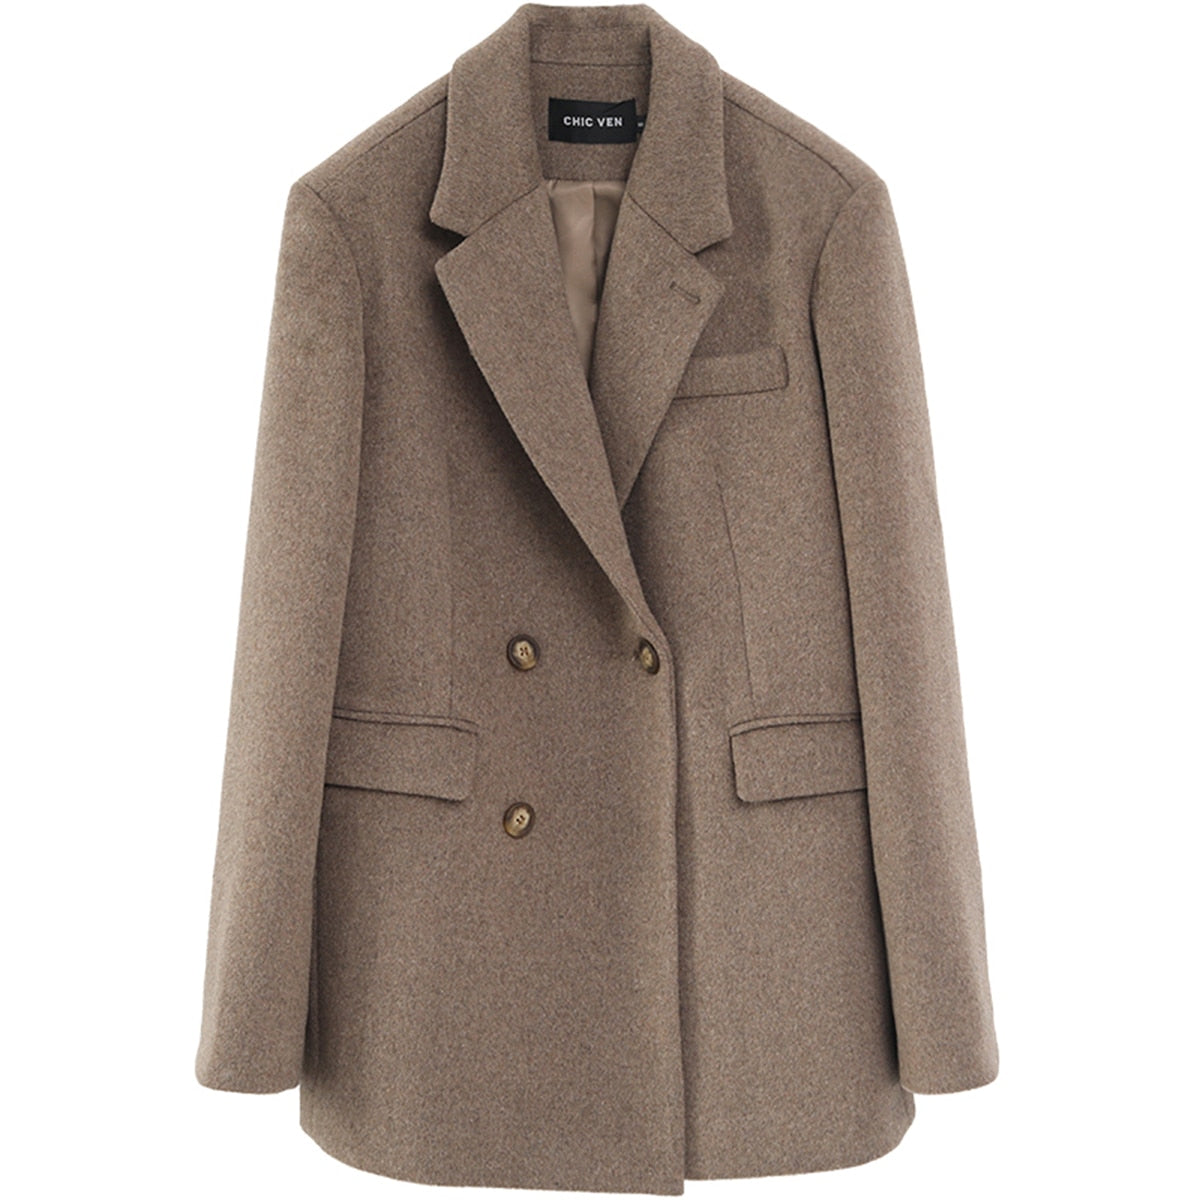 Women Wool Blend Coat Solid Mid Long Woolen Blazer Thick Warm Blouse Women's Overcoat Office Lady Tops Autumn Winter